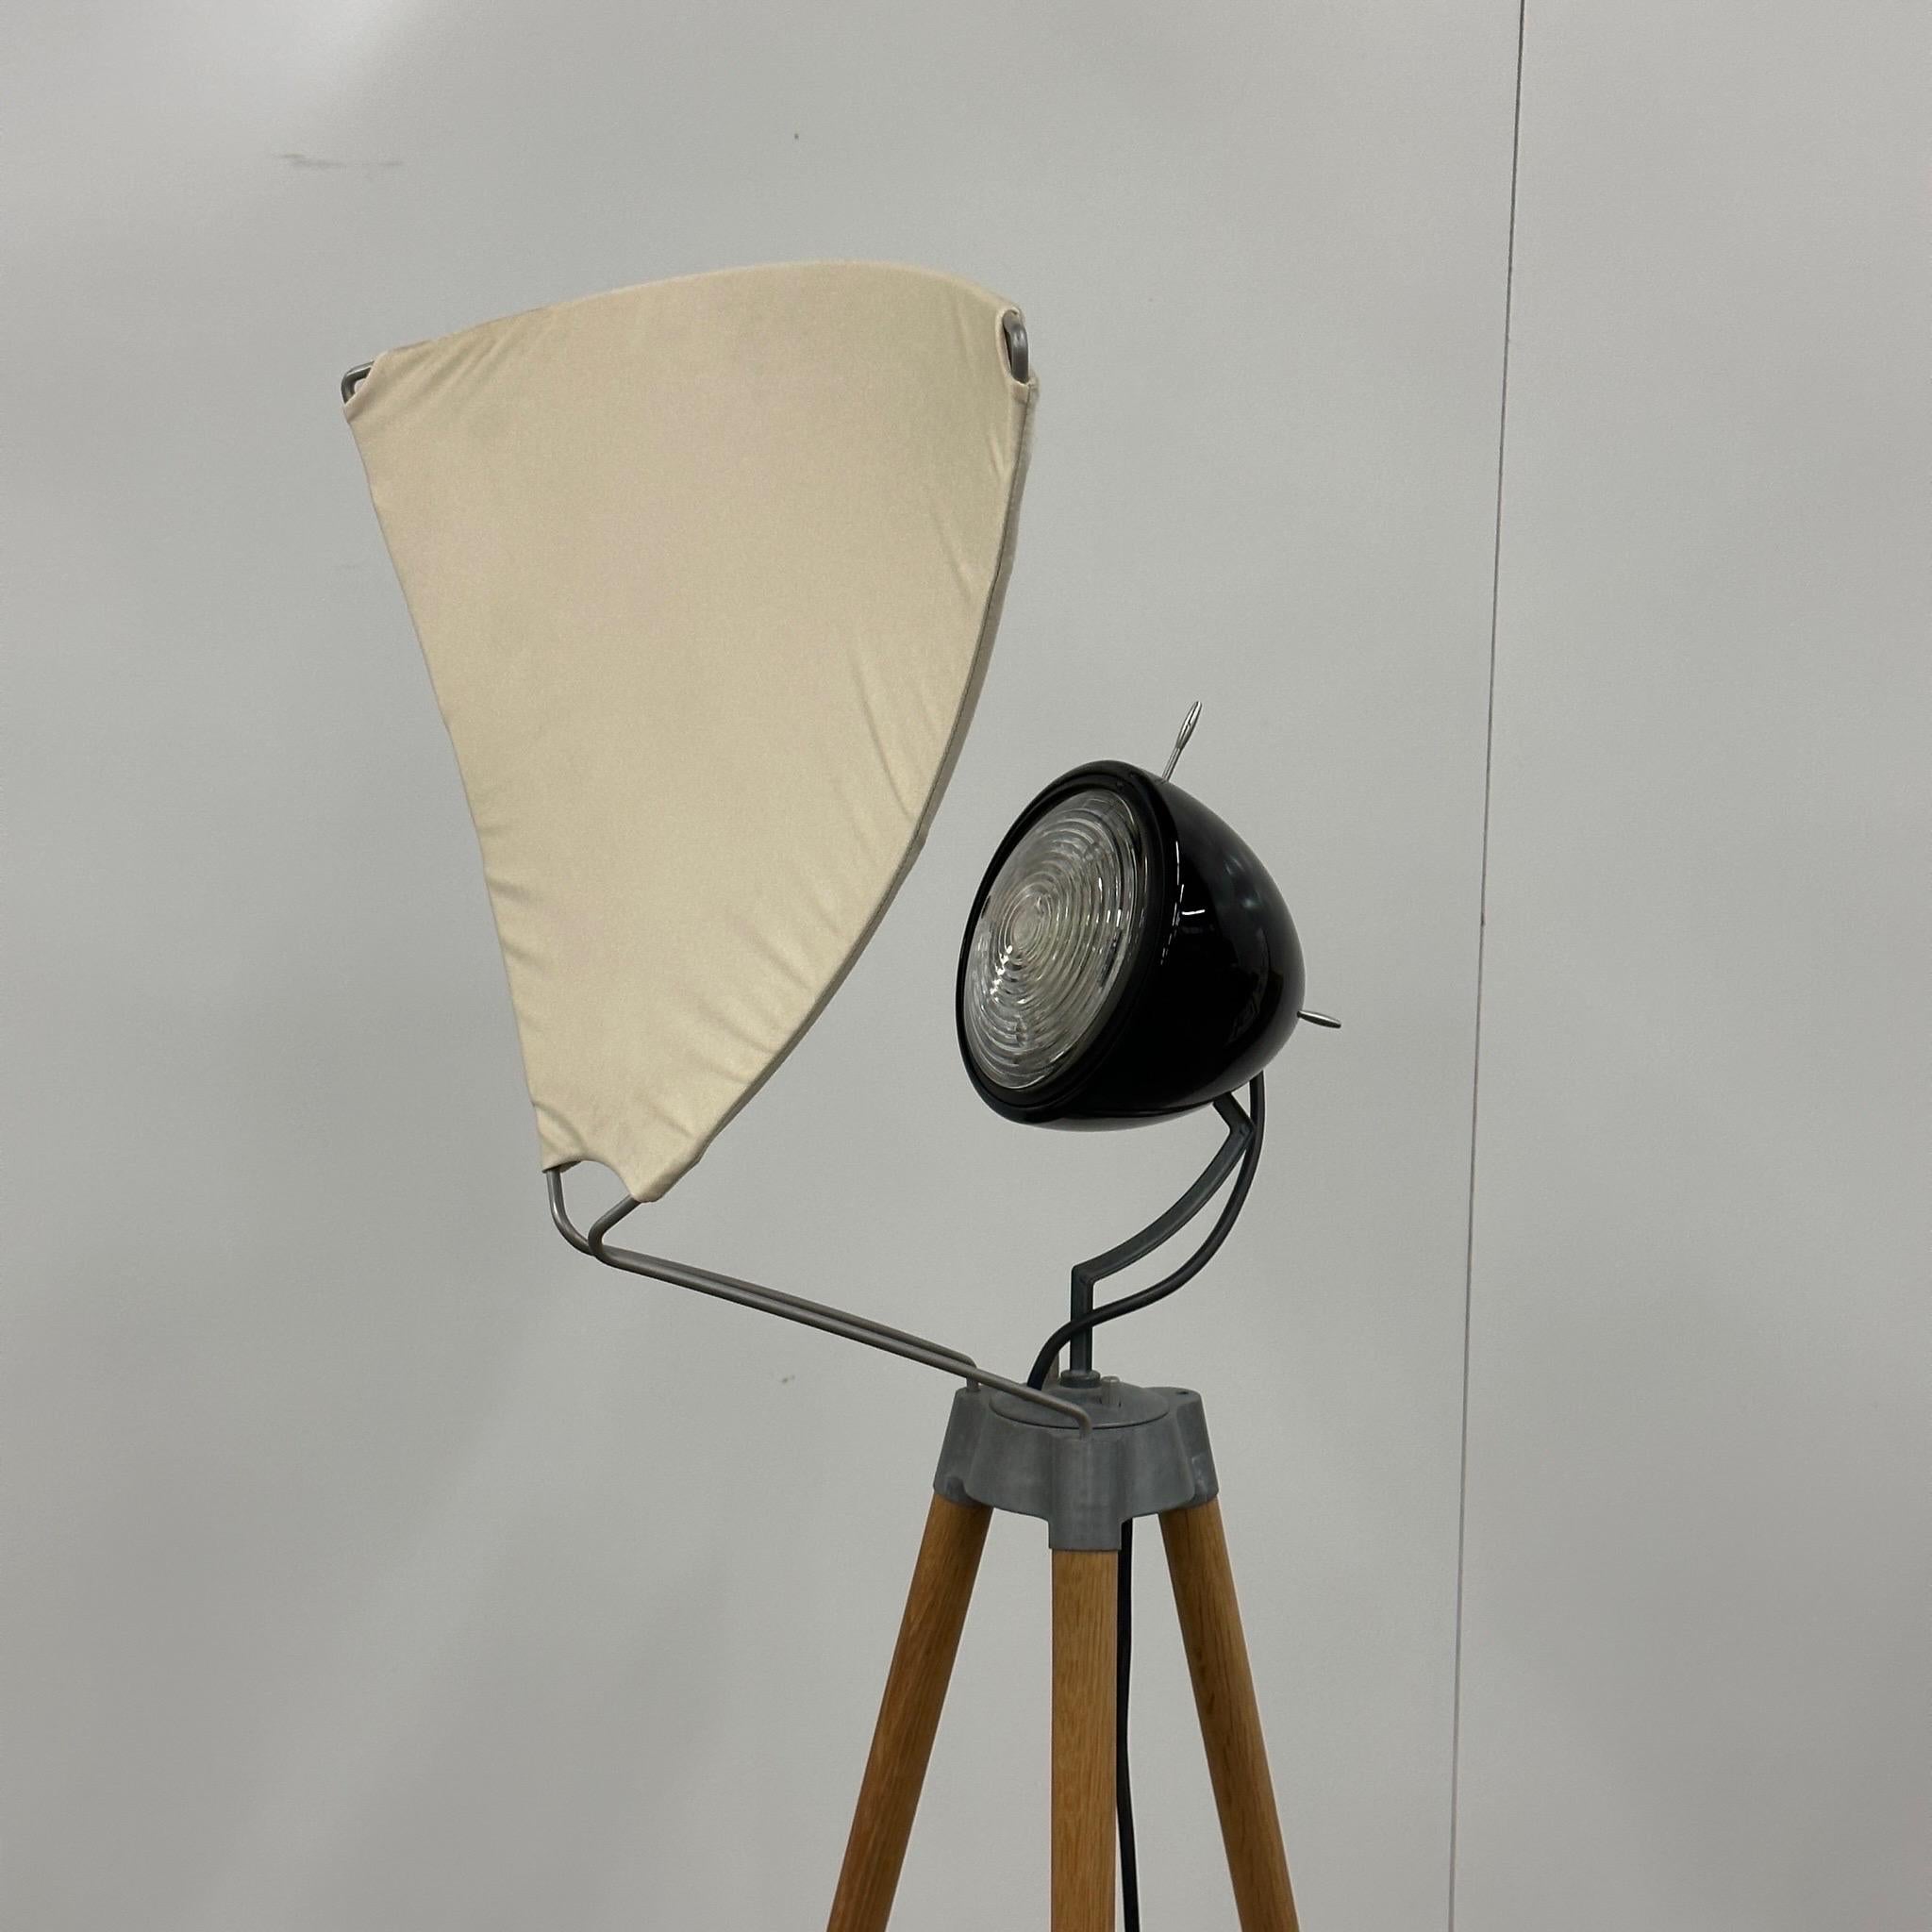 c. 1990s. Entworfen von Tobias Grau, Deutschland. Holzbeine mit Lampenkopf aus Metall, abnehmbarer Baumwollschirm.